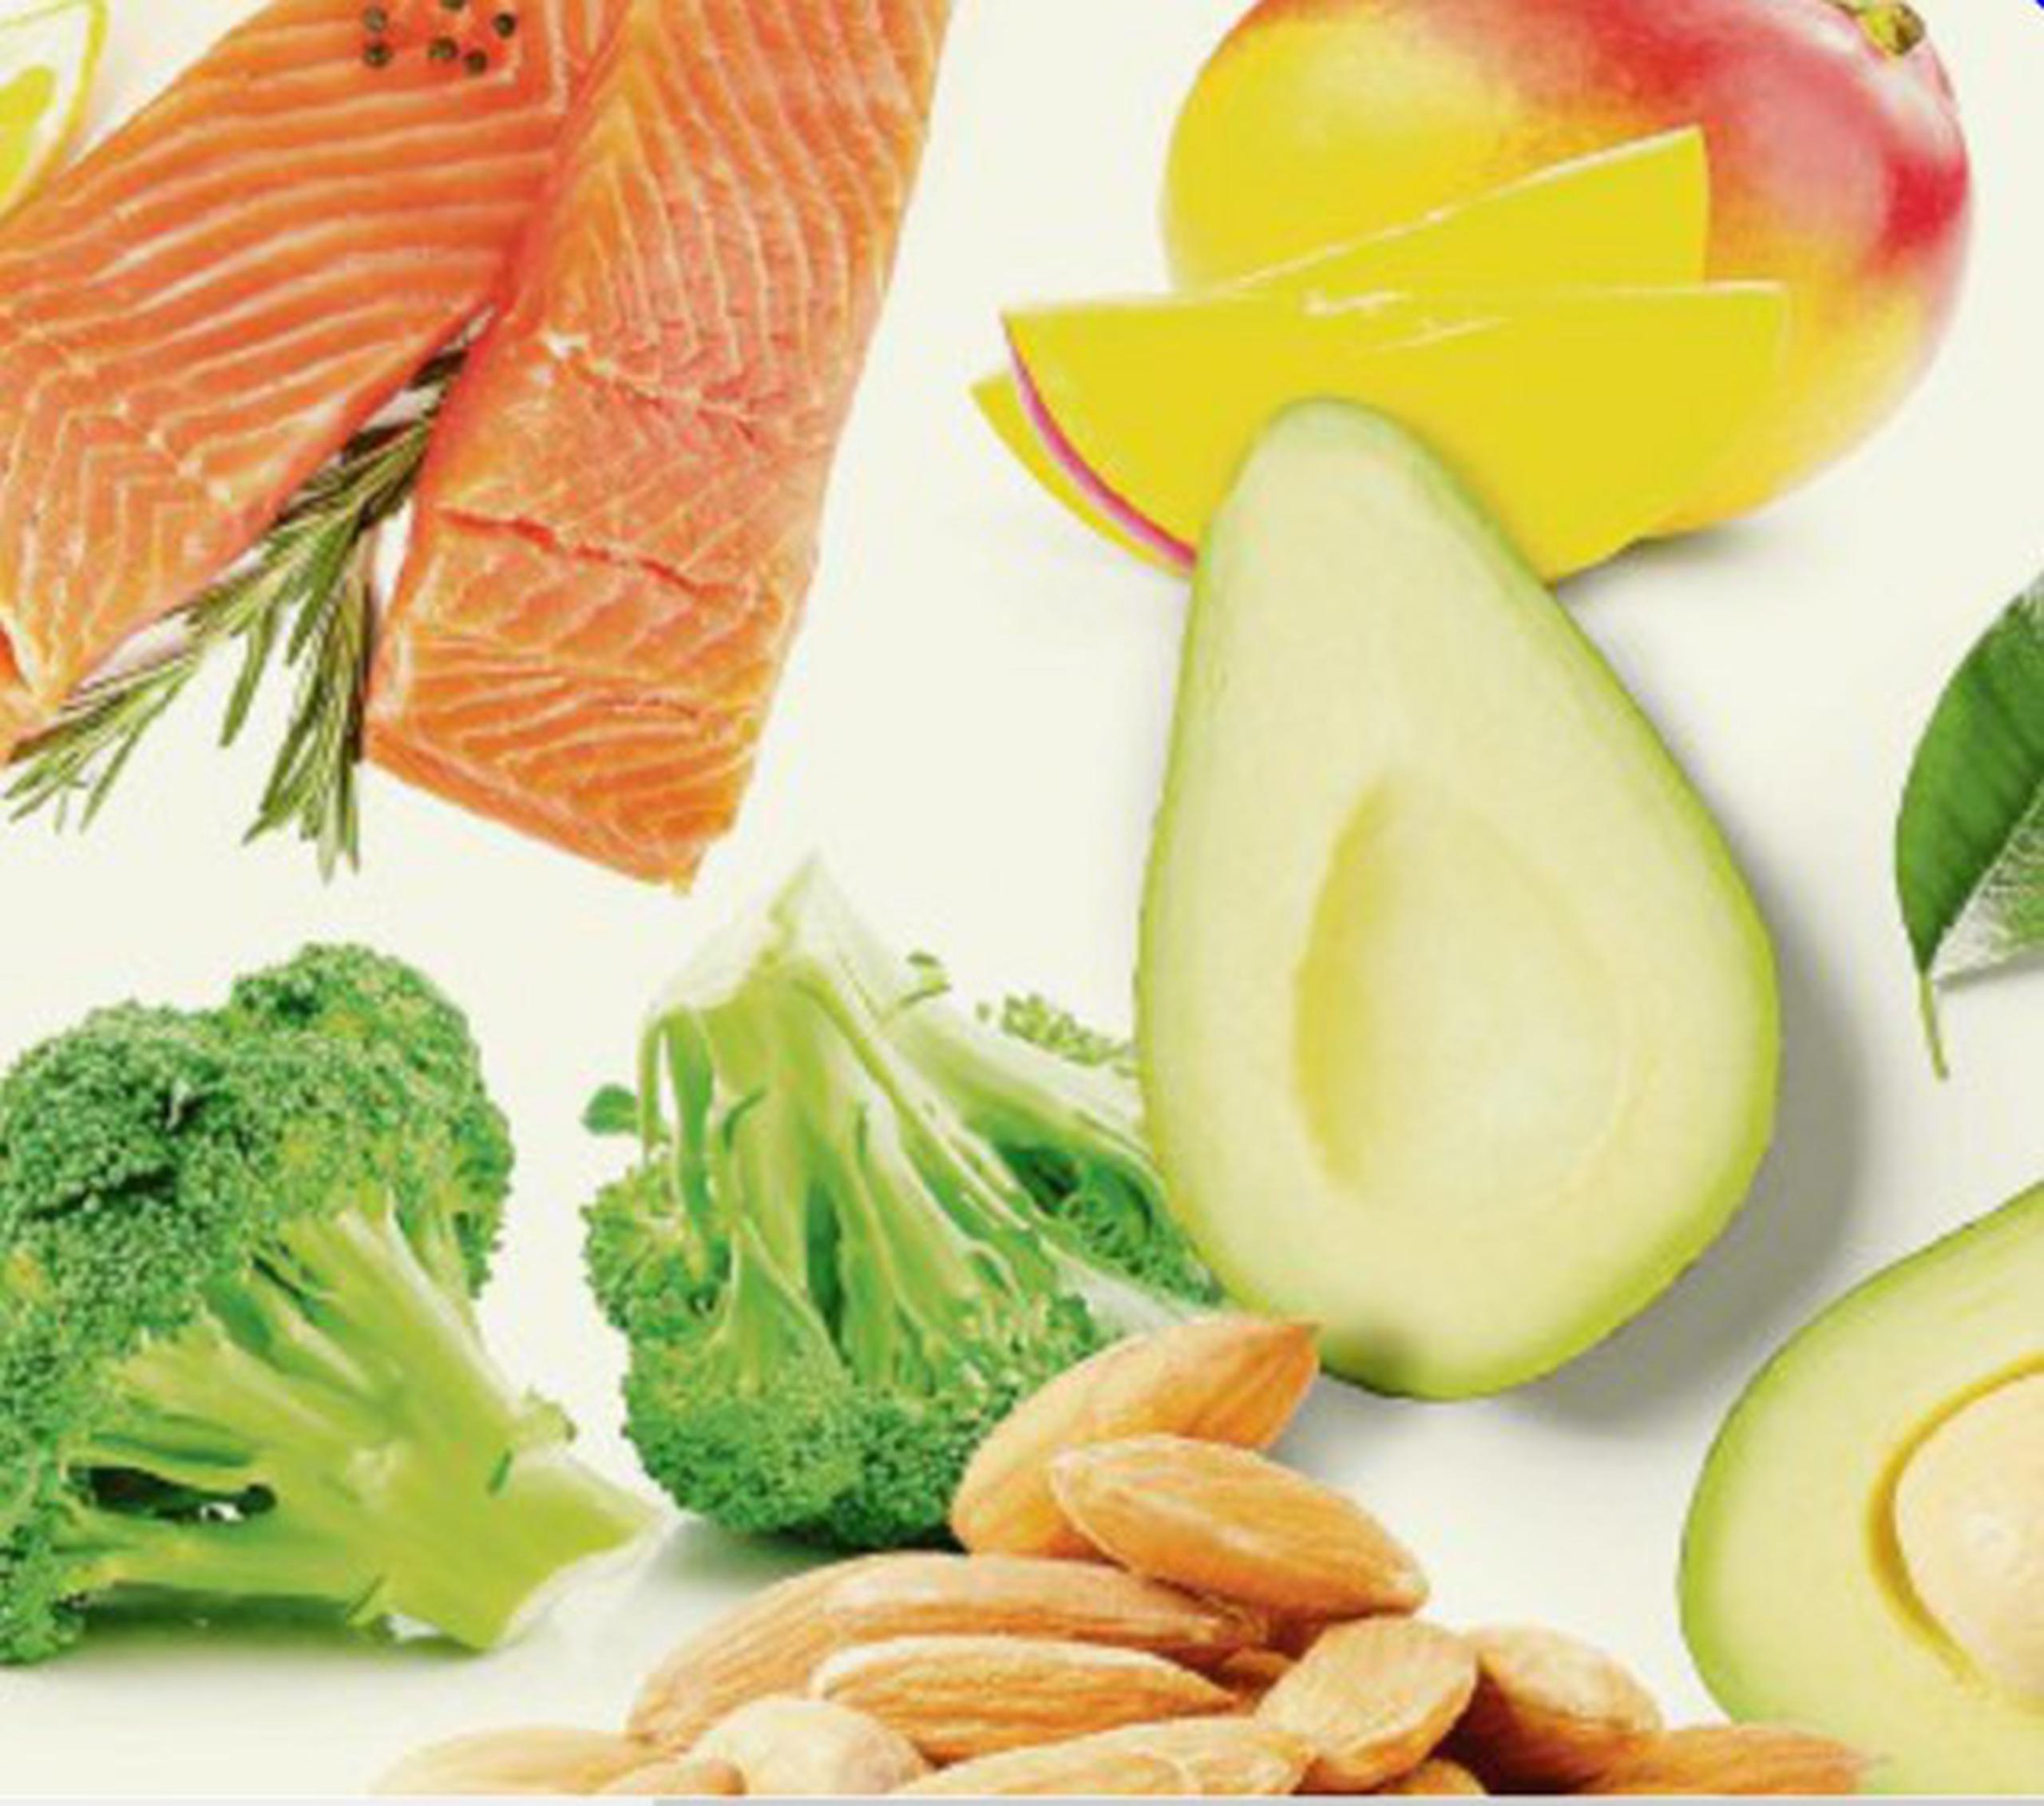 Salmón, mangó, brócoli, nueces y aguacate encabezan la lista de los alimentos con más vitaminas.